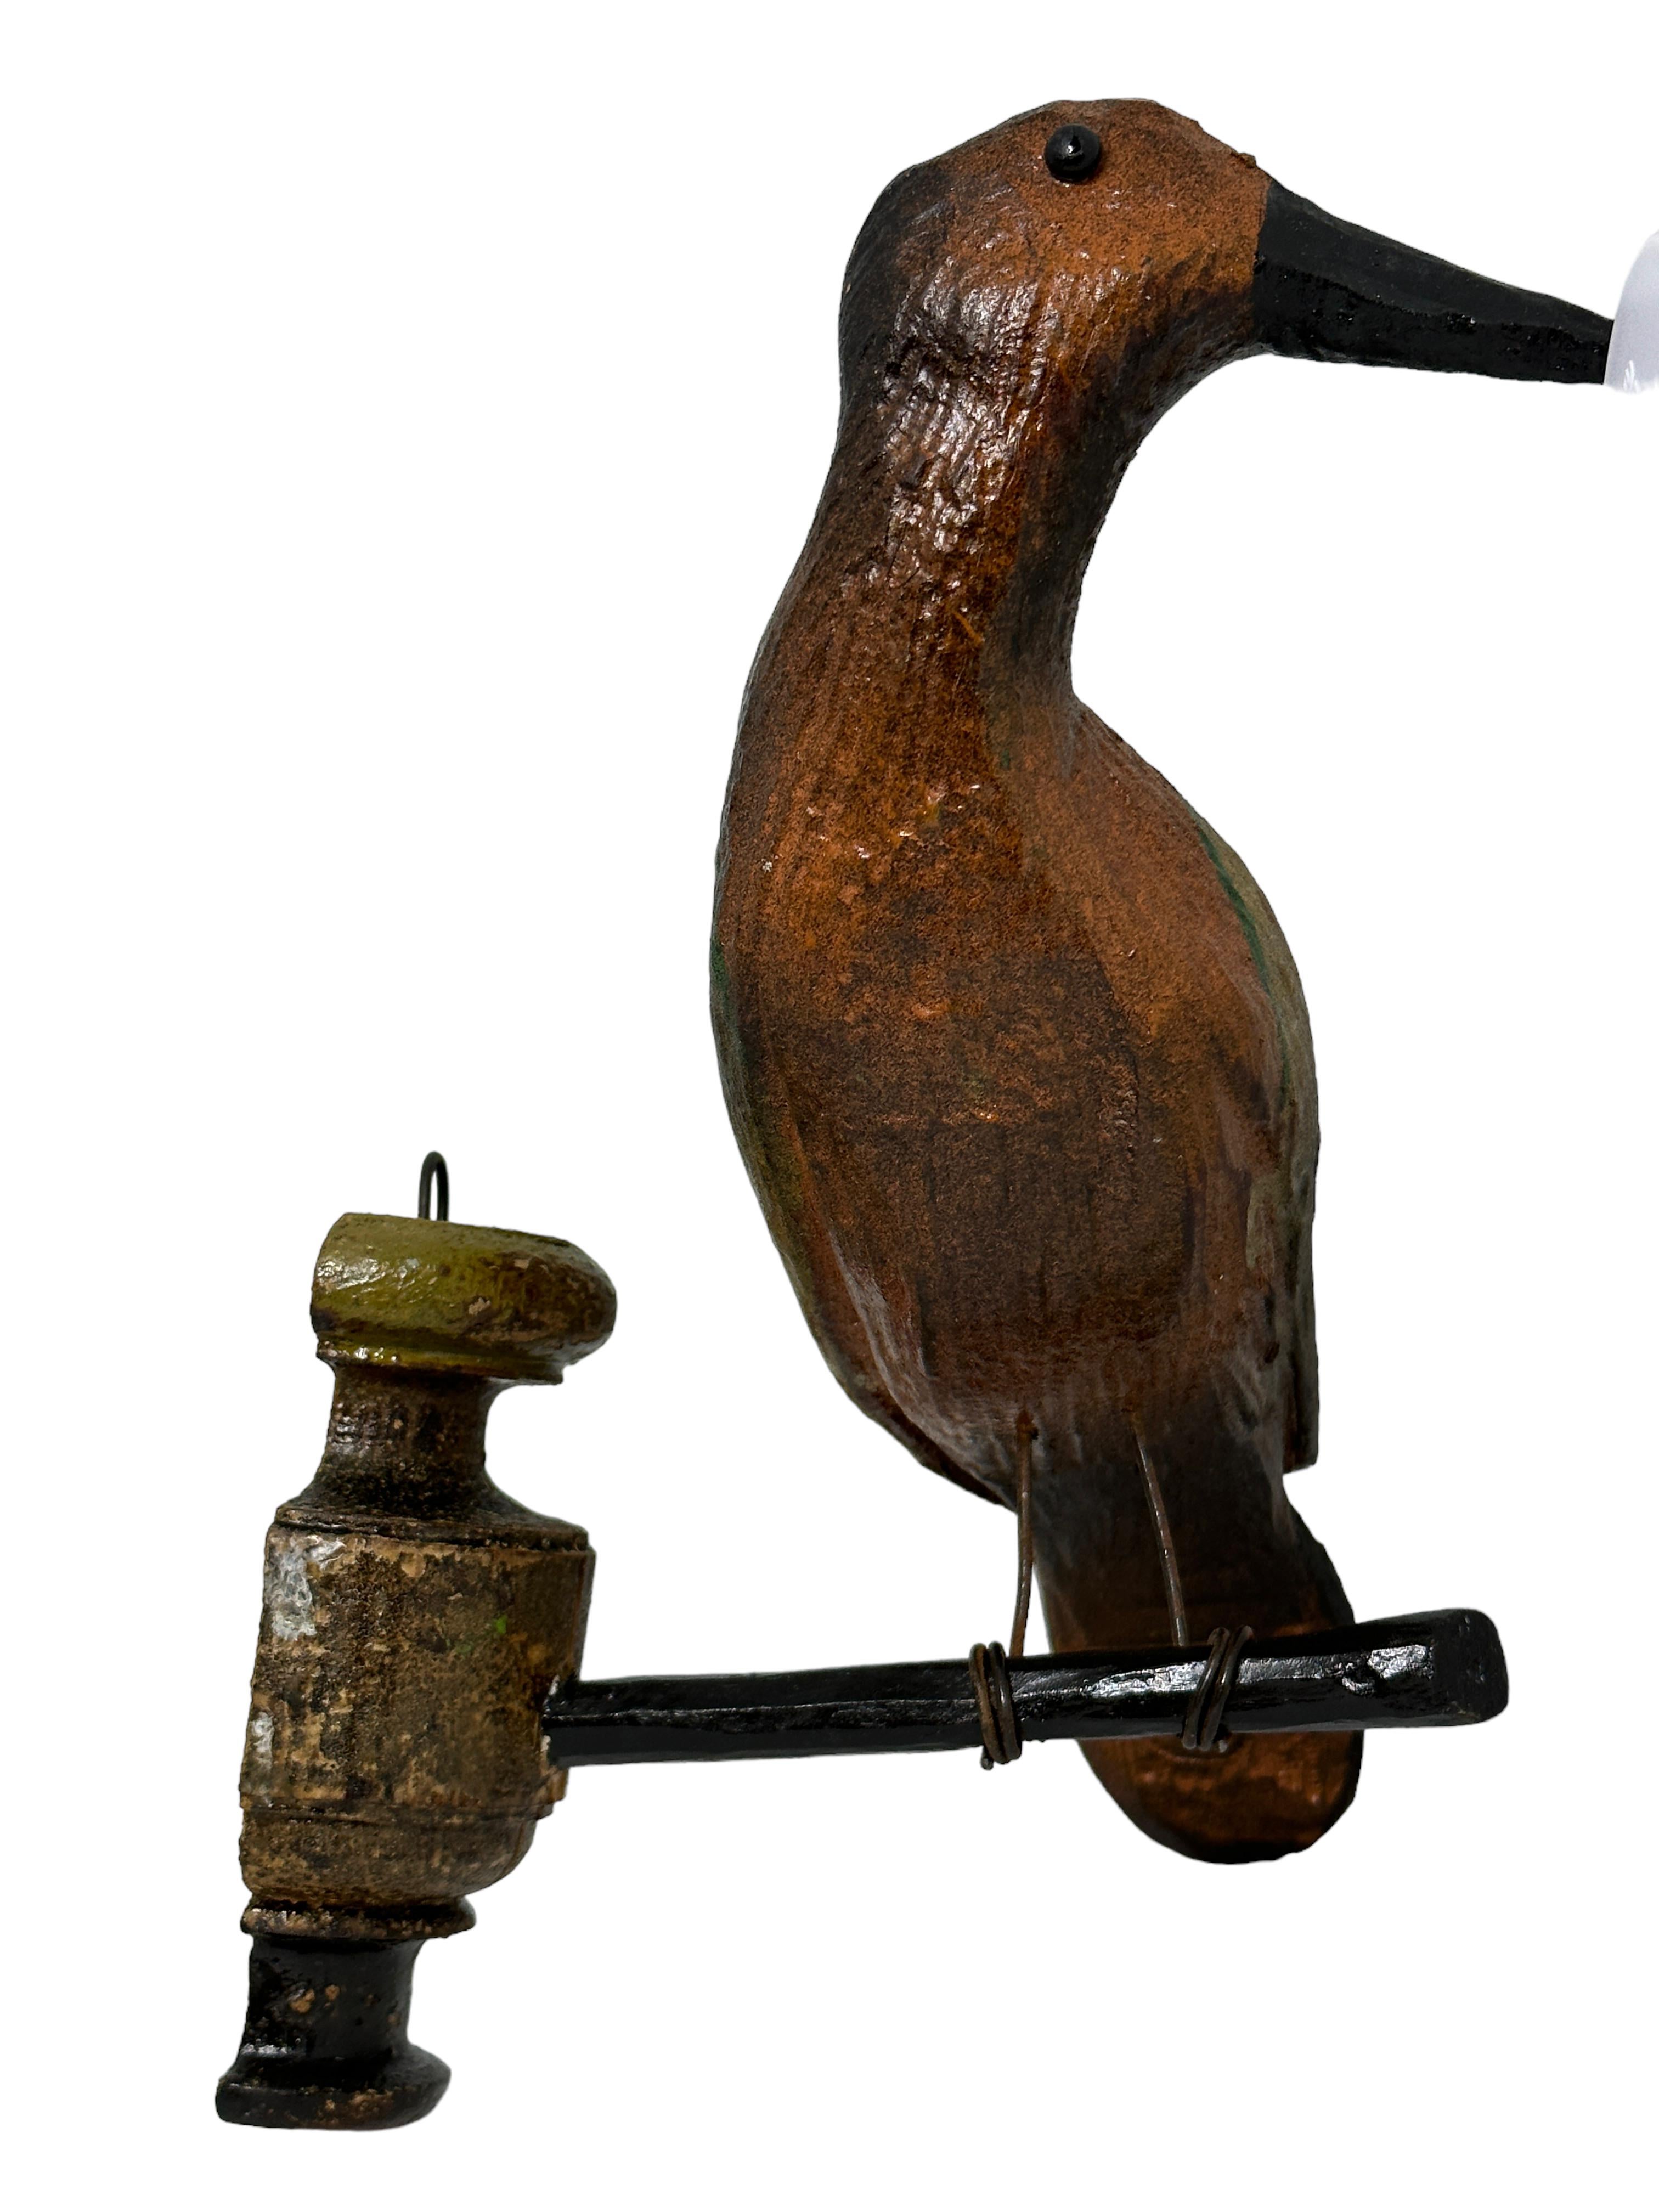 Austrian Large Vichtauer Hand Carved Wood Bird, Black Forest Folk Art, Austria, 1910s